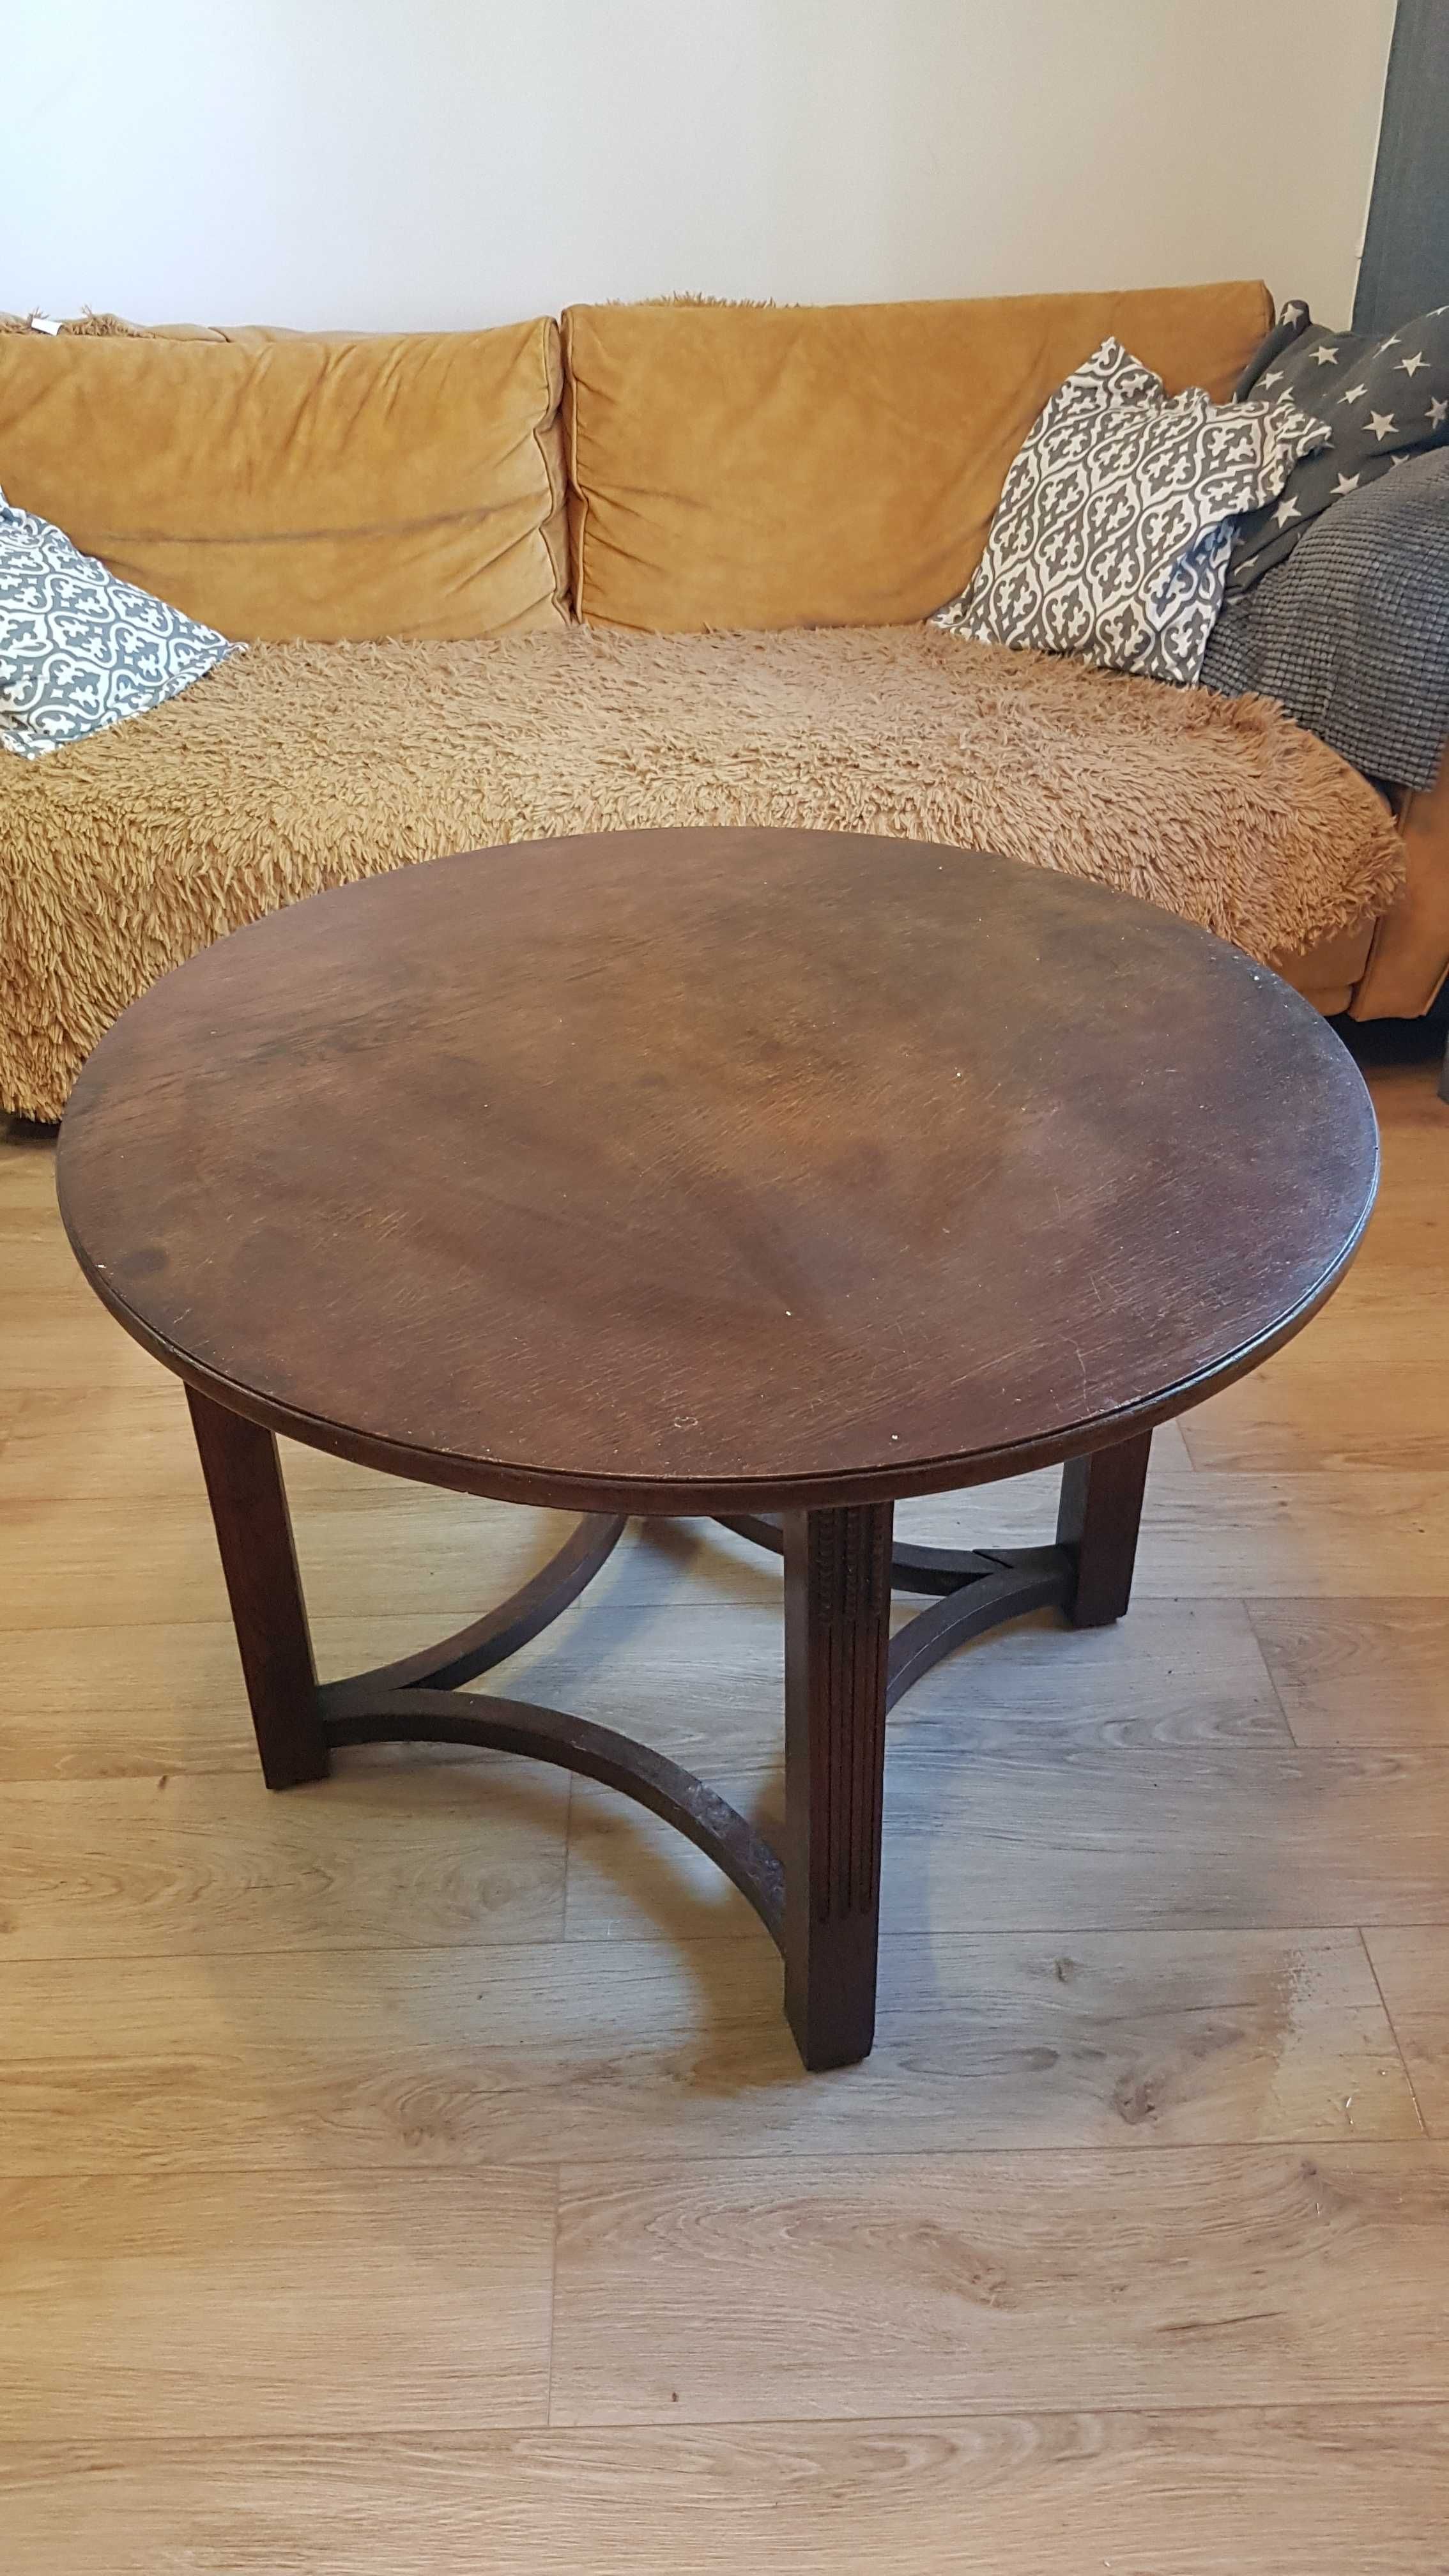 Stół i fotel do małej renowacji